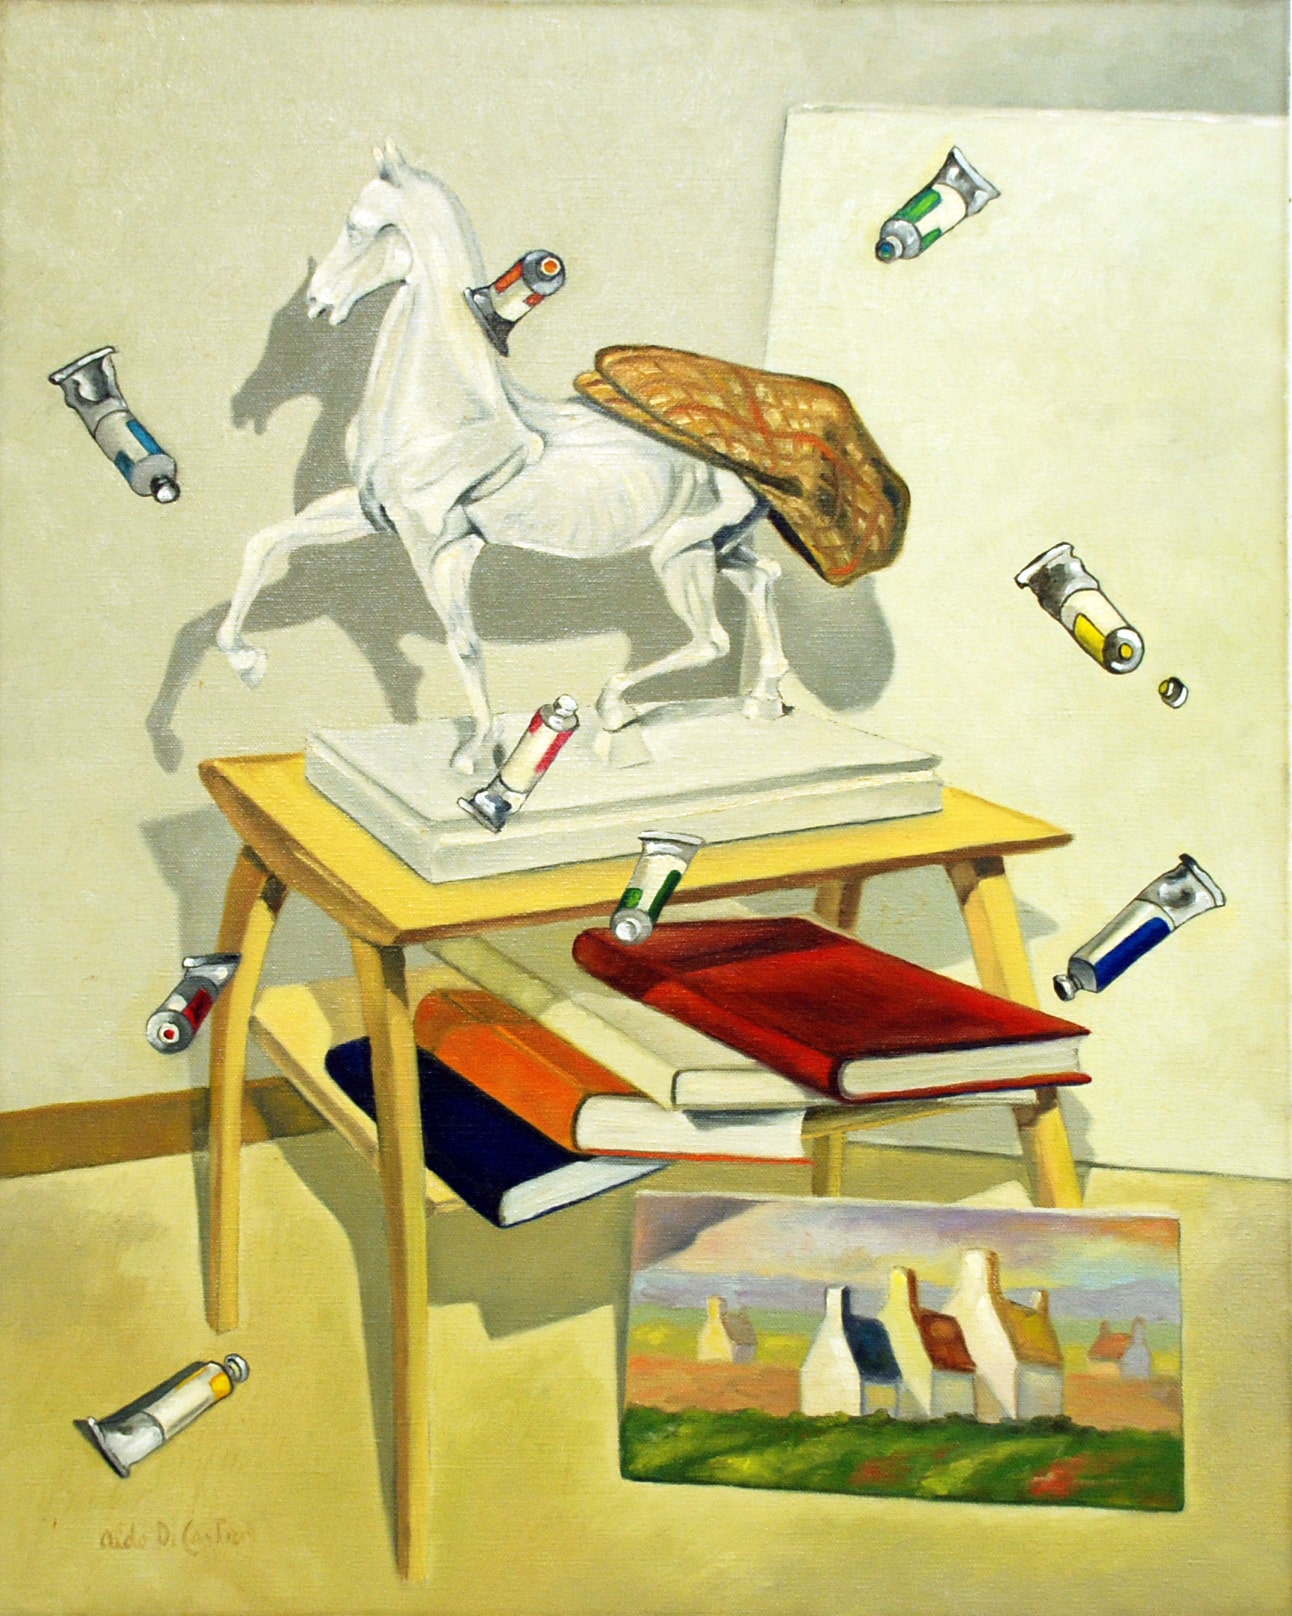 Anatomia, cavalli e libri - olio su tela - 1978 - 65x81